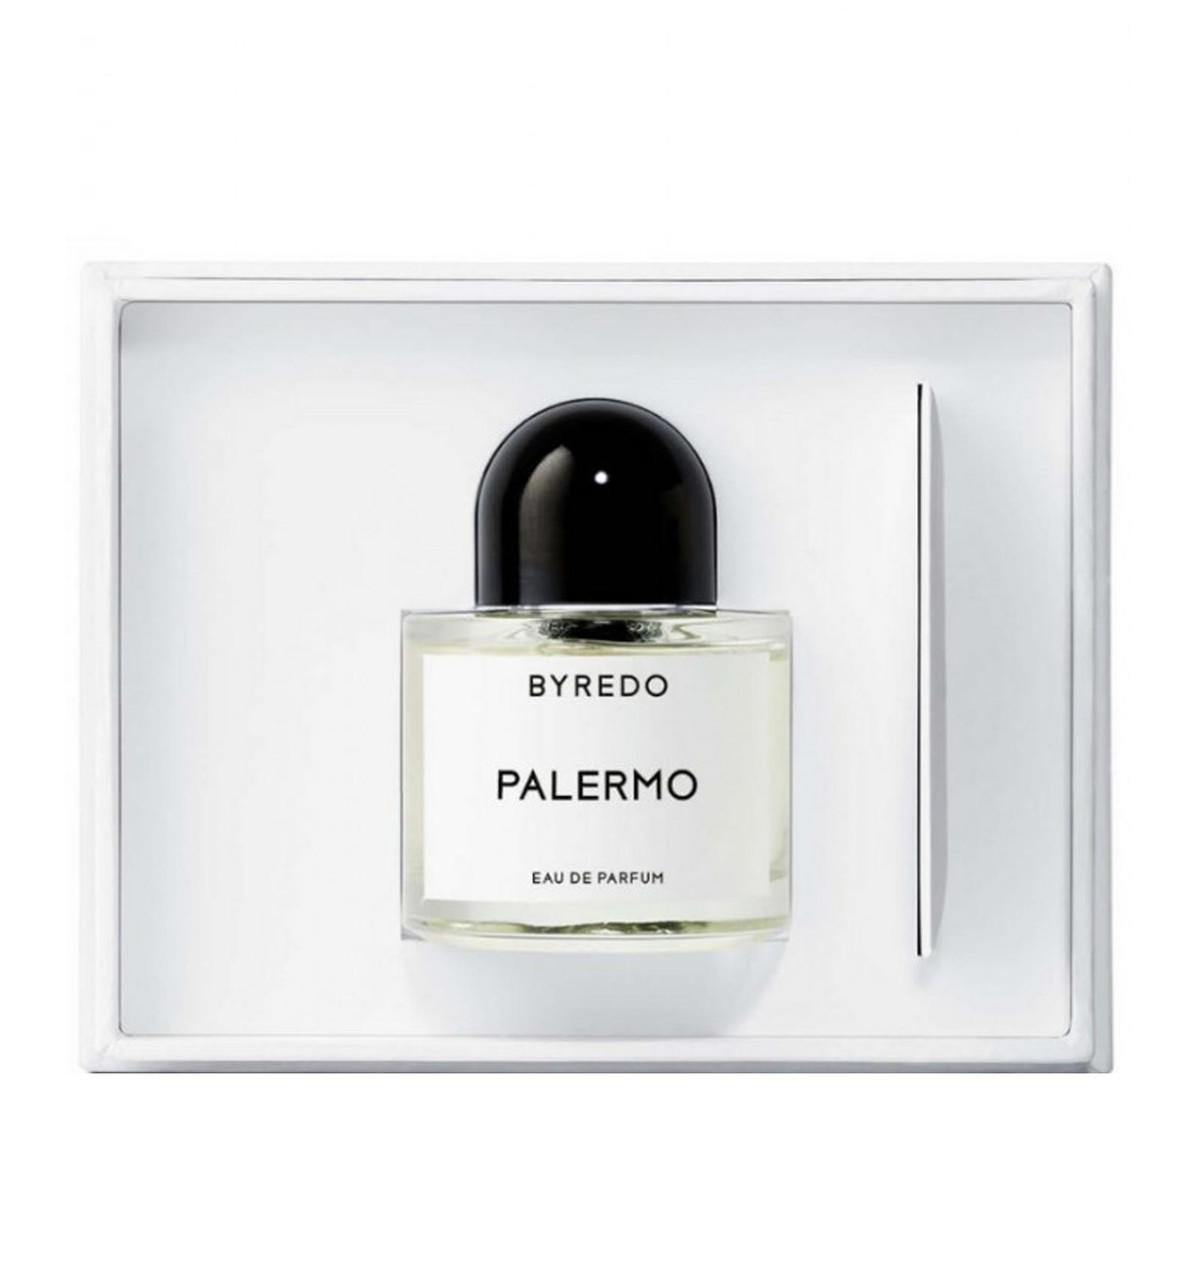 Byredo Palermo by Byredo for Unisex - 3.3 oz EDP Spray 7340032806250 -  Fragrances & Beauty, Palermo - Jomashop